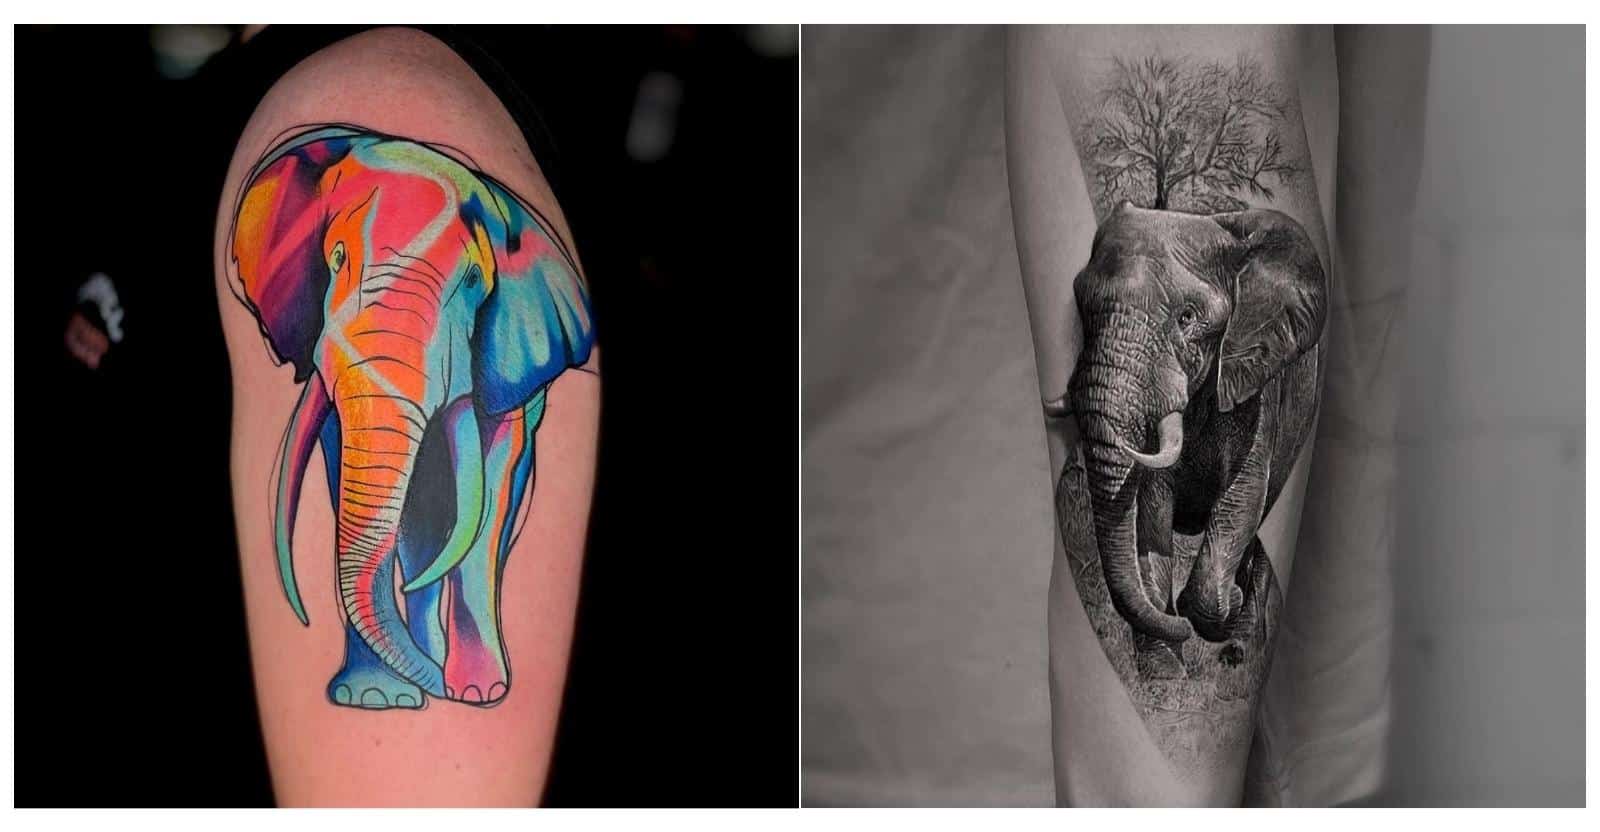 Equinox Tattoo Studio - Elephant back tattoo done today #tattoo #elephant  #ink #freshink #elephanttattoo #blackandgreytattoo #art #backtattoo  #derbytattoostudio #equinoxtattoostudio #marklitherland #tat | Facebook